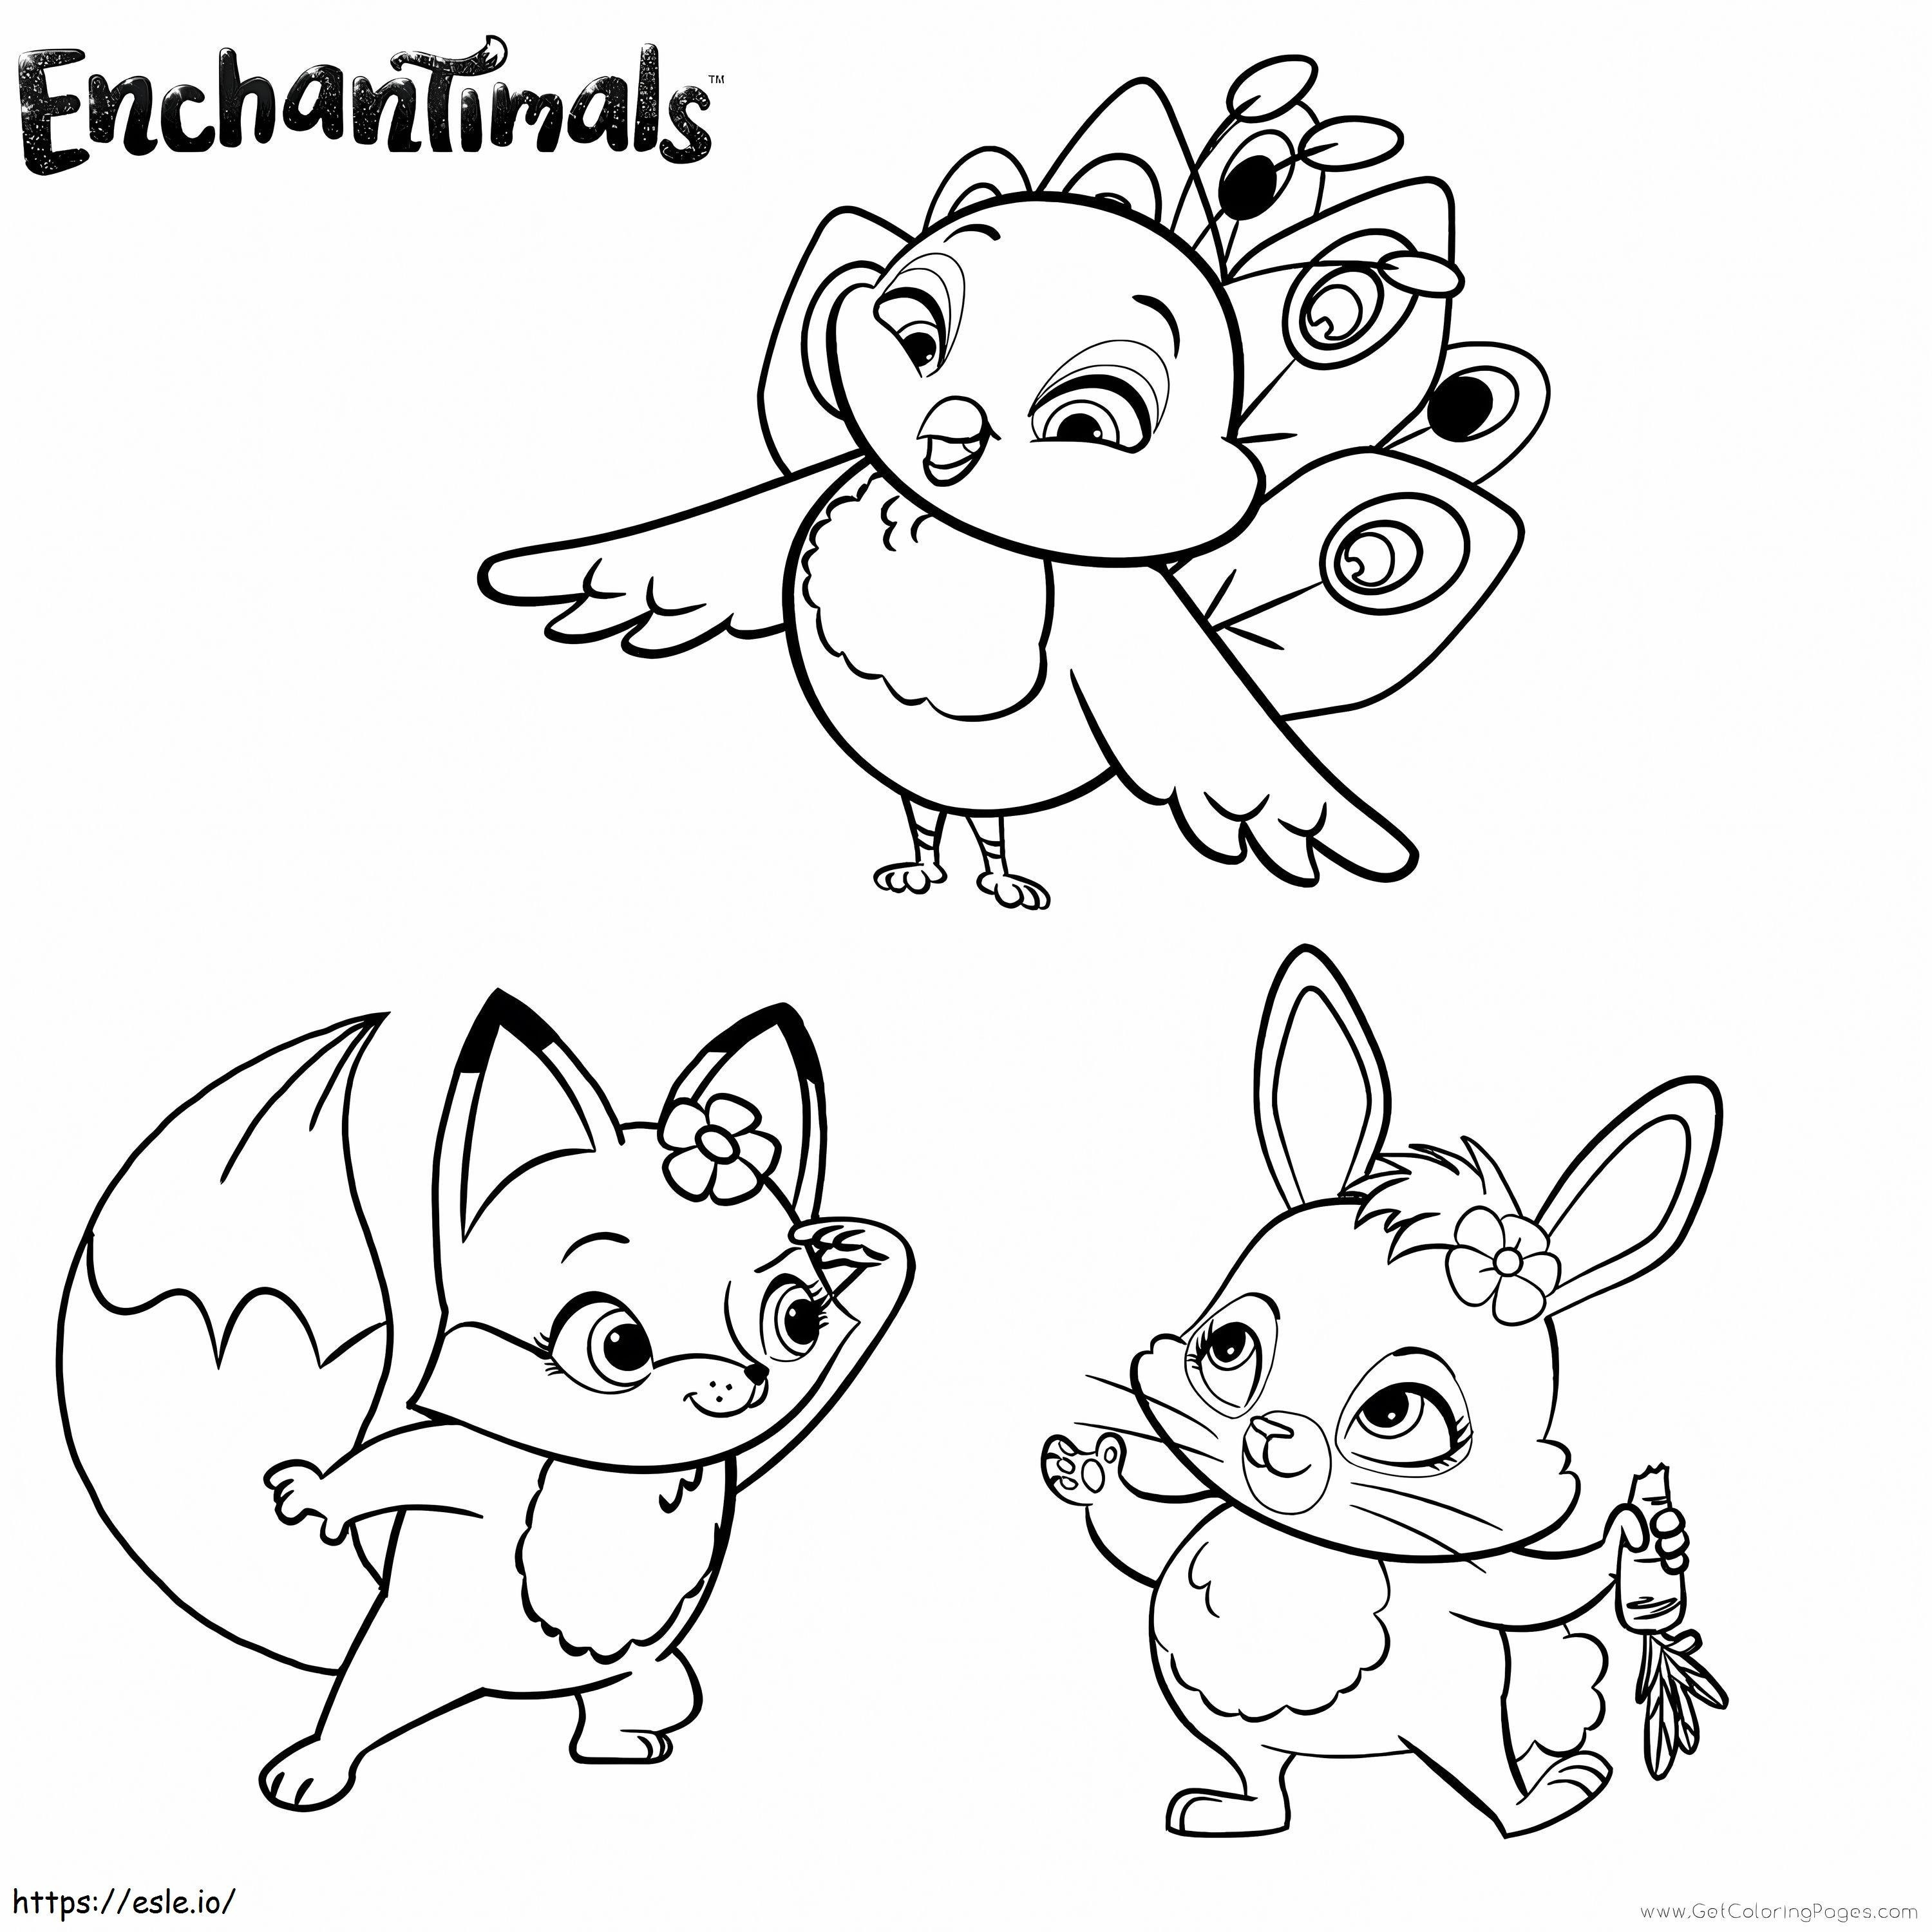 Enchantimals-Tiere ausmalbilder